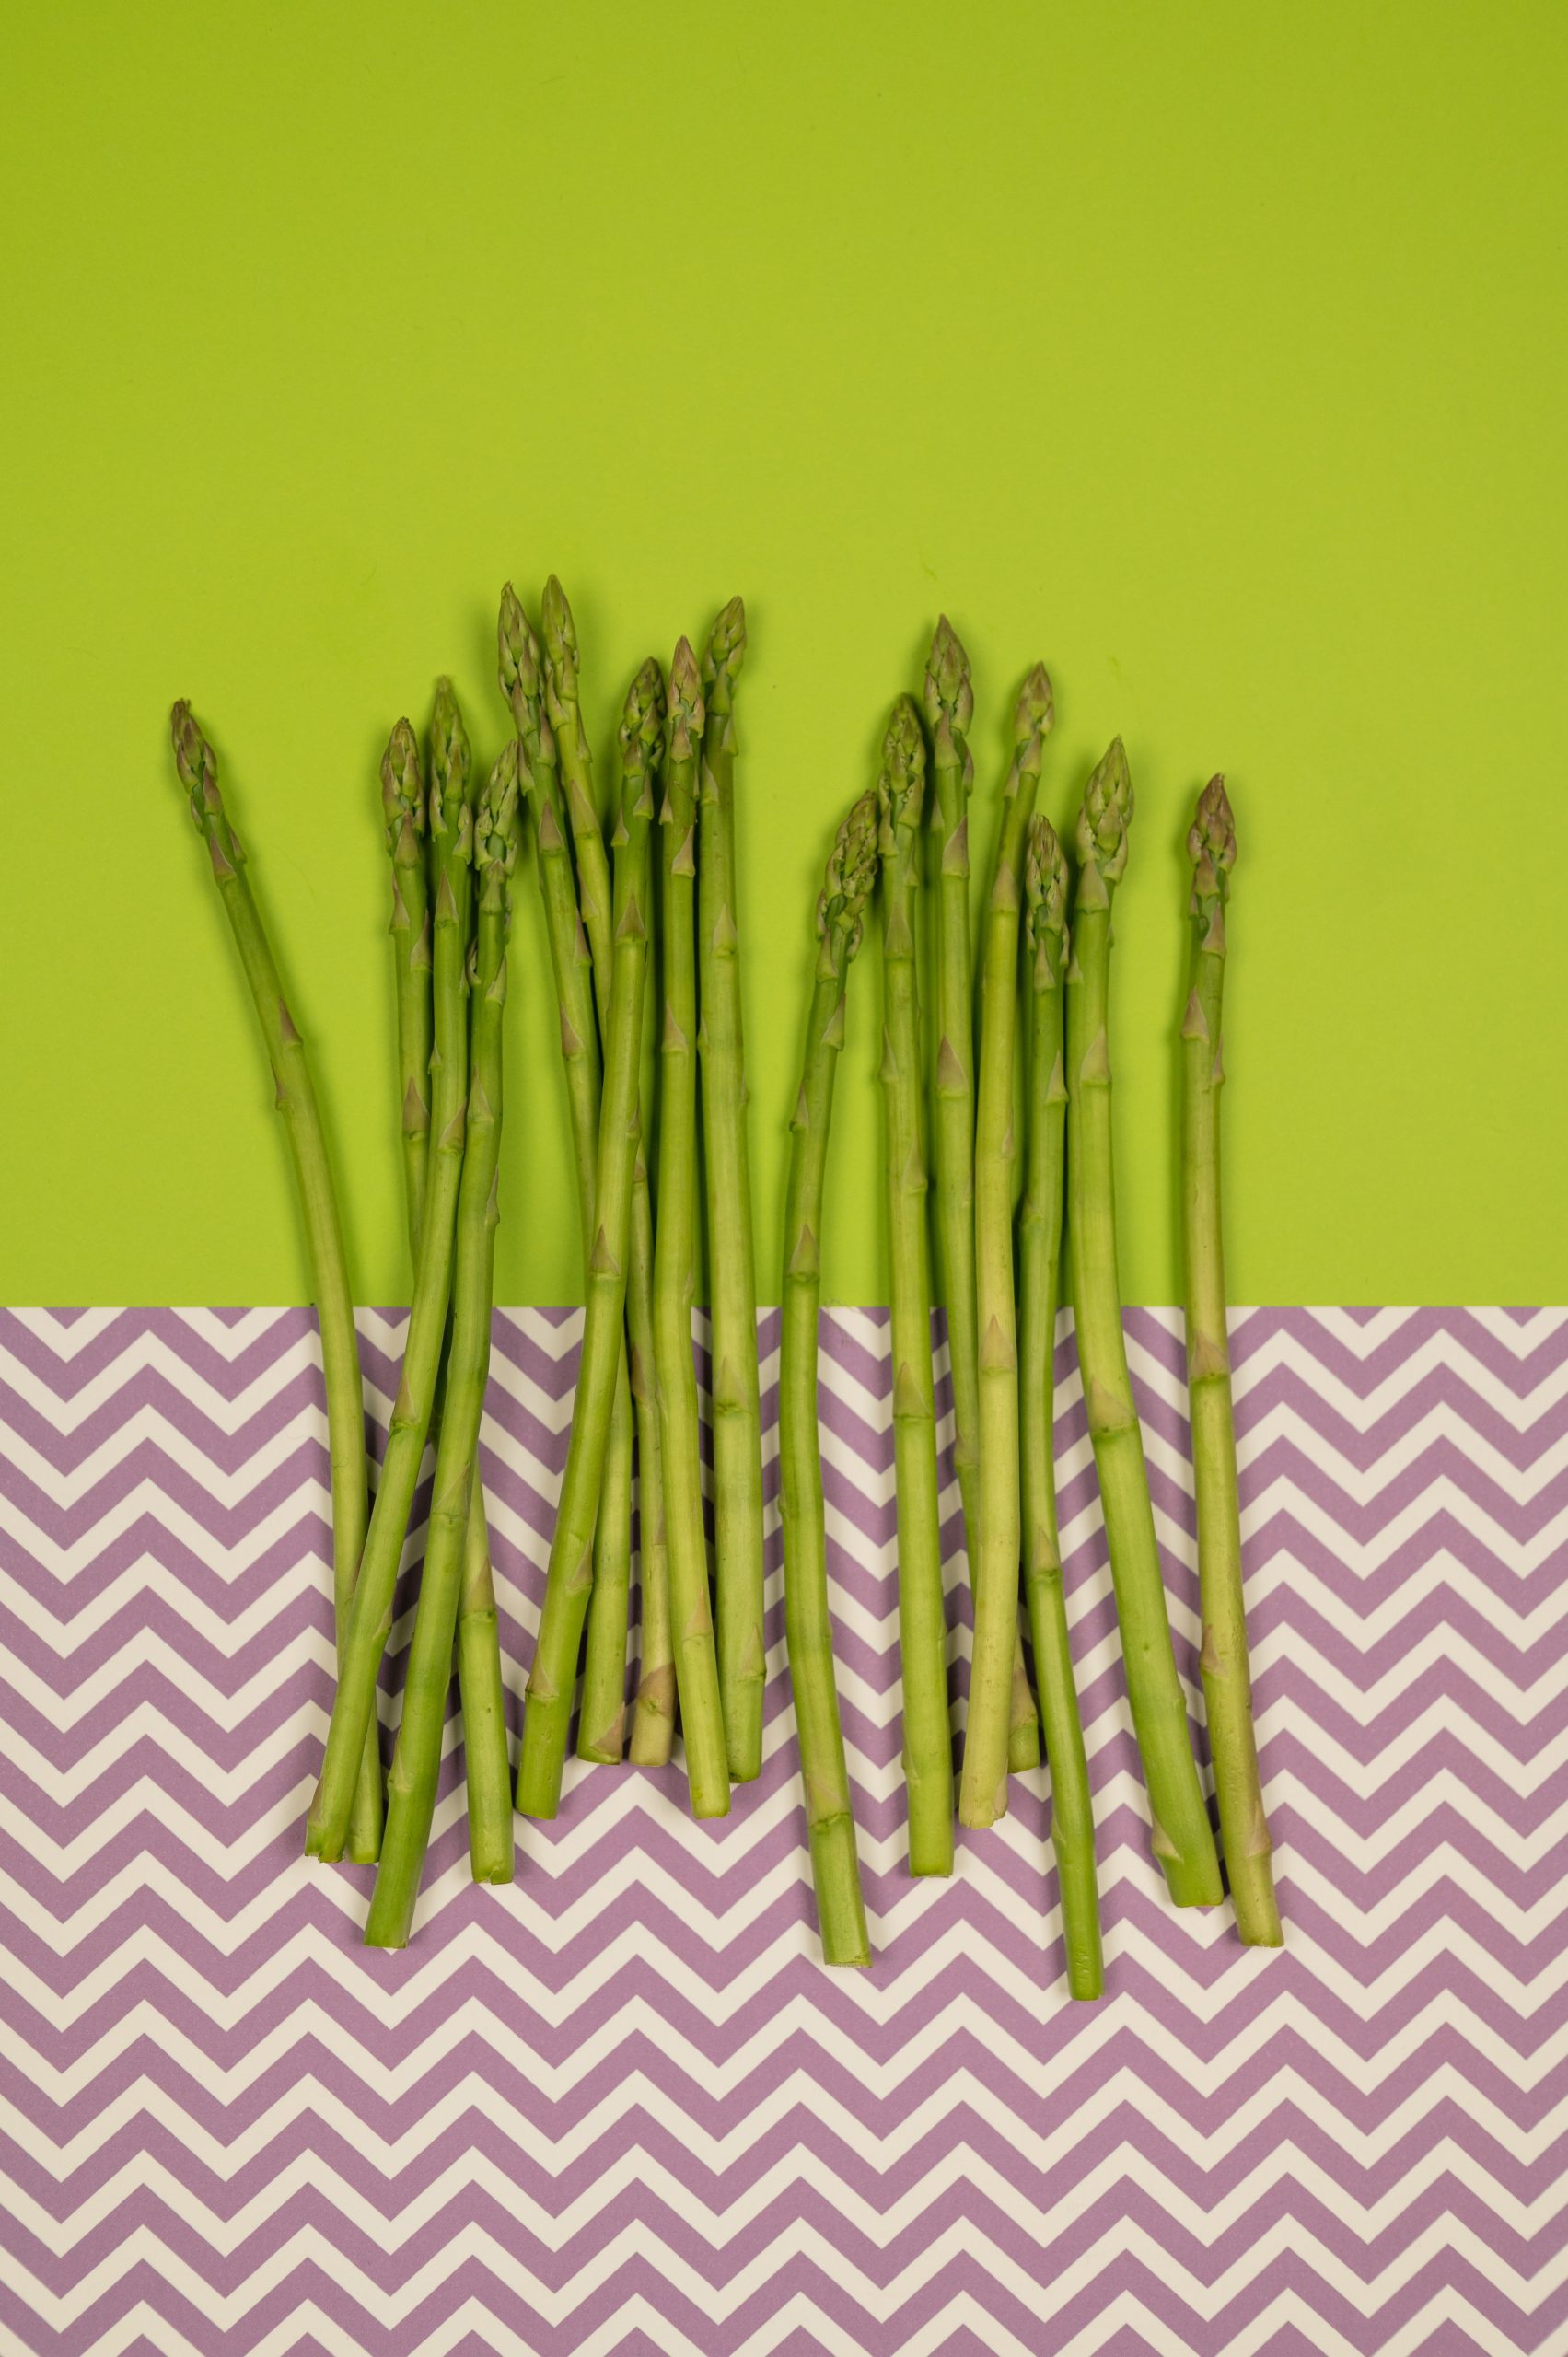 asparagi asparagus verdure veg